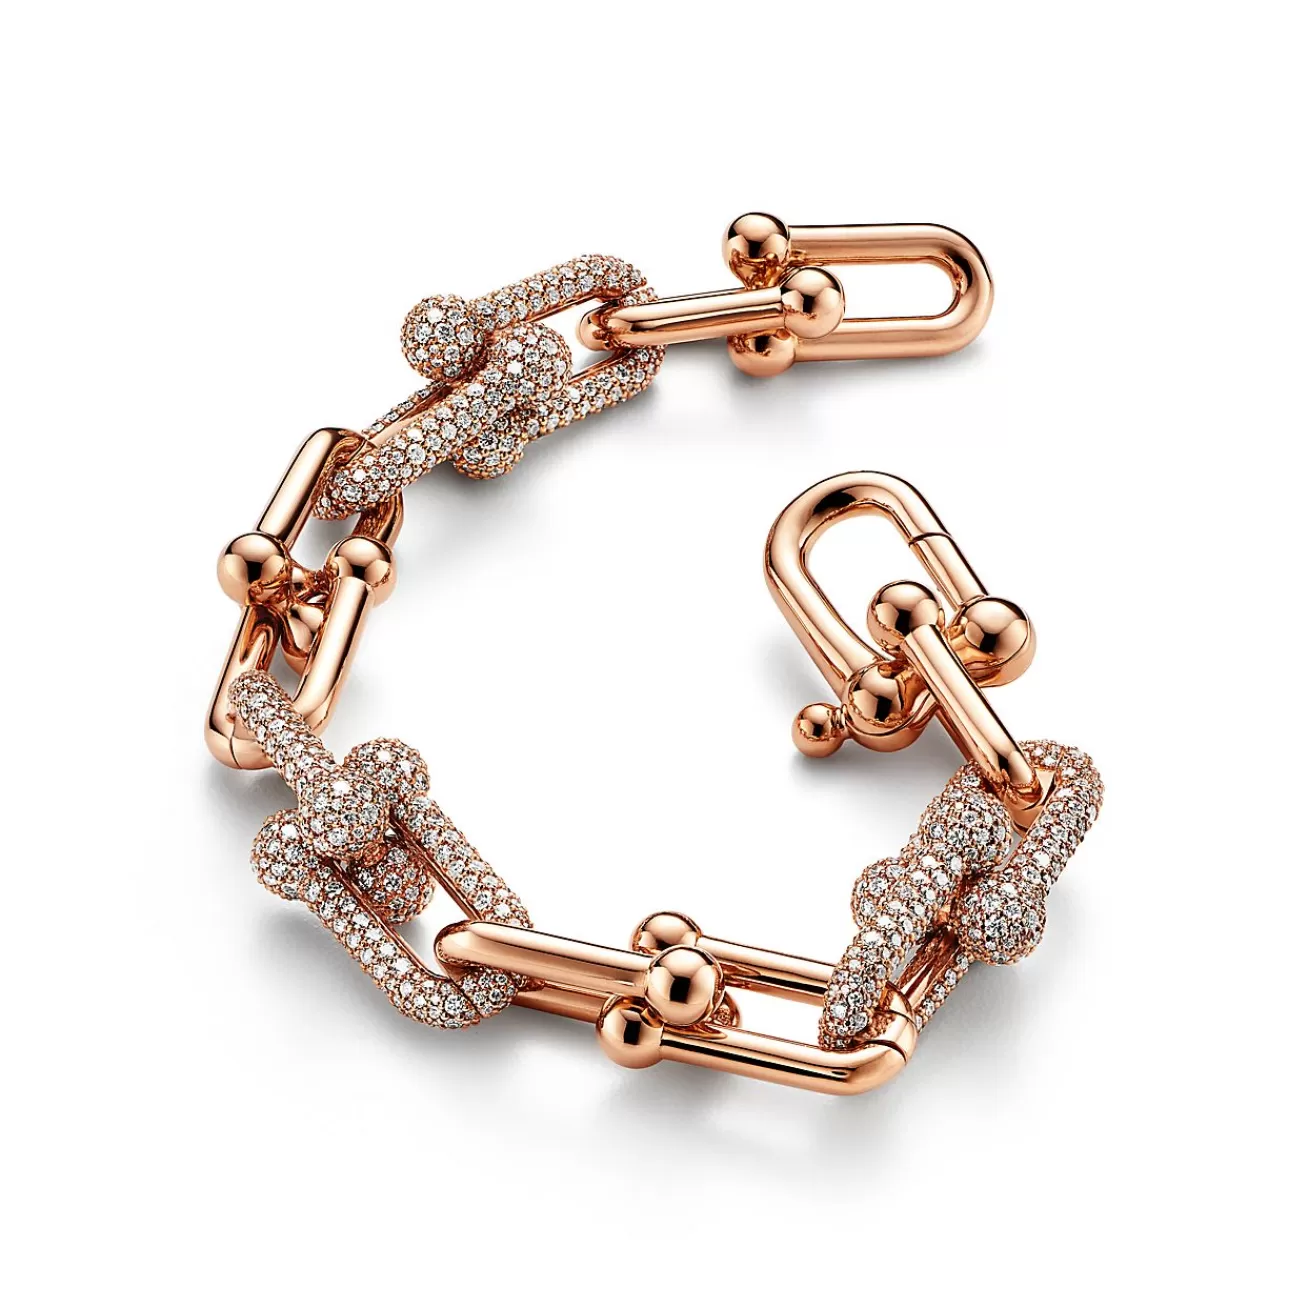 Tiffany & Co. Tiffany HardWear Large Link Bracelet in Rose Gold with Pavé Diamonds | ^ Bracelets | Rose Gold Jewelry